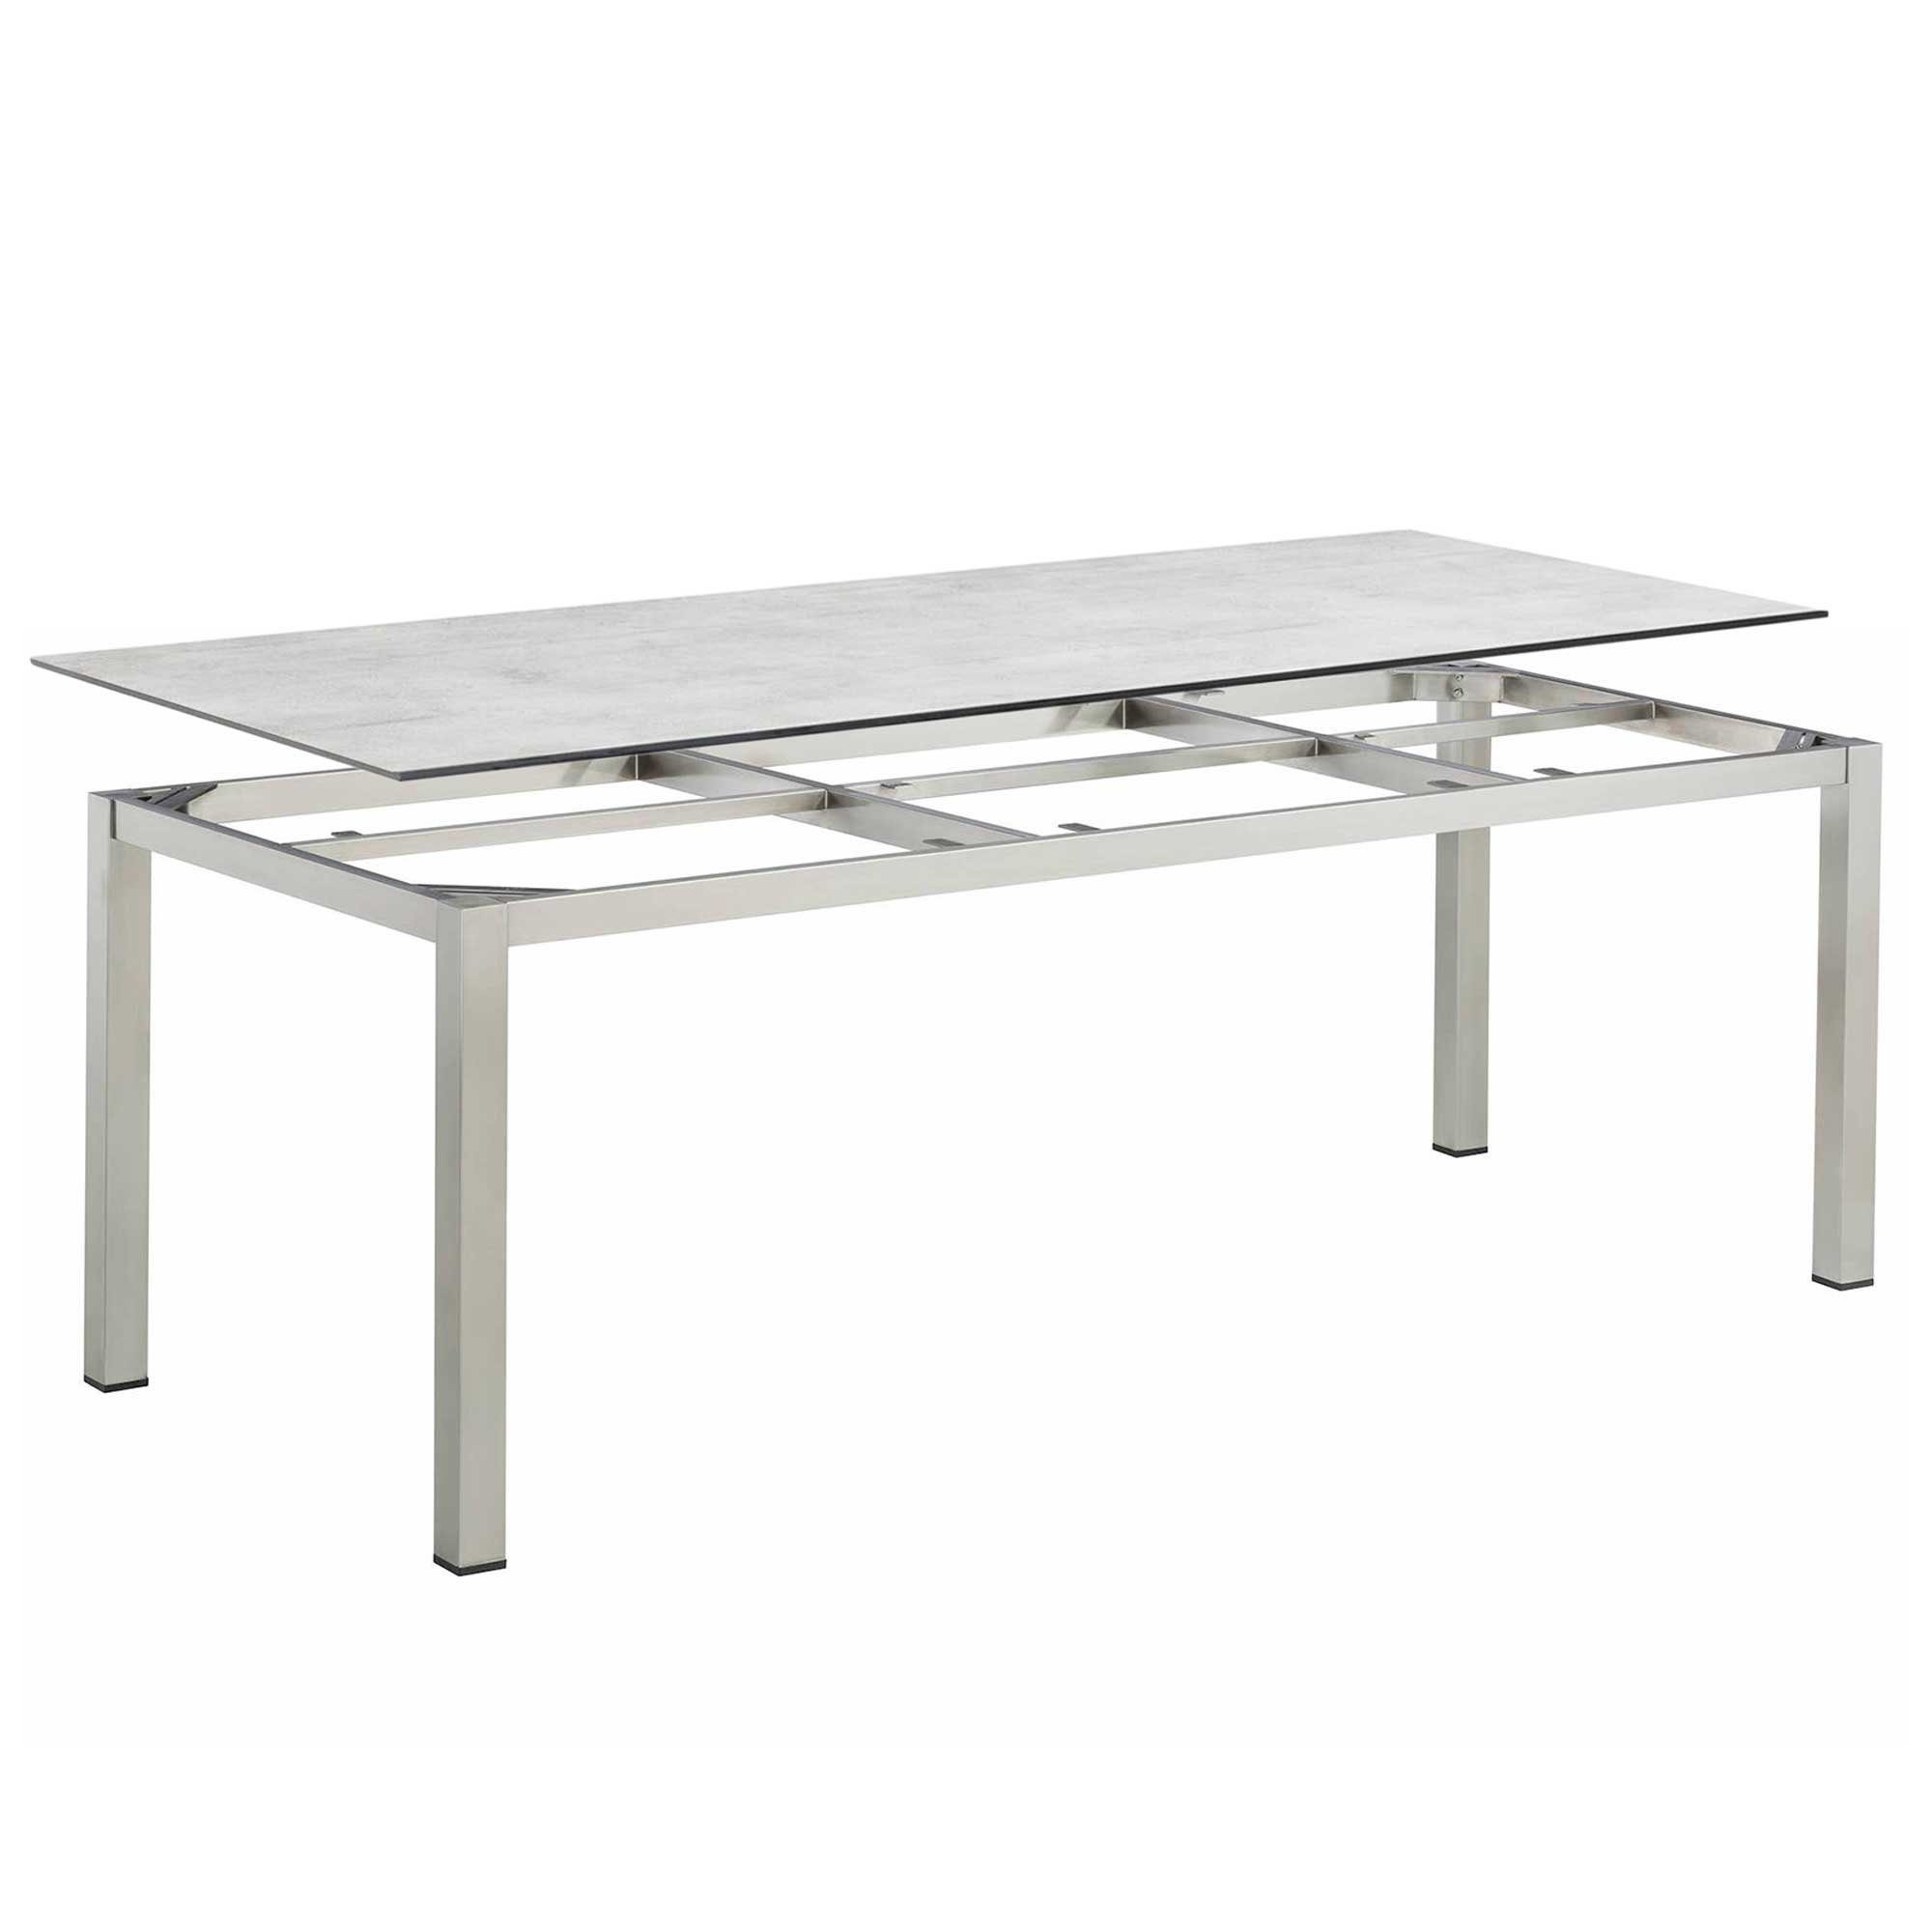 KETTLER Gartentisch Kettler Cubic Edelstahl Gartentisch 220x95cm mit HPL Tischplatte grau